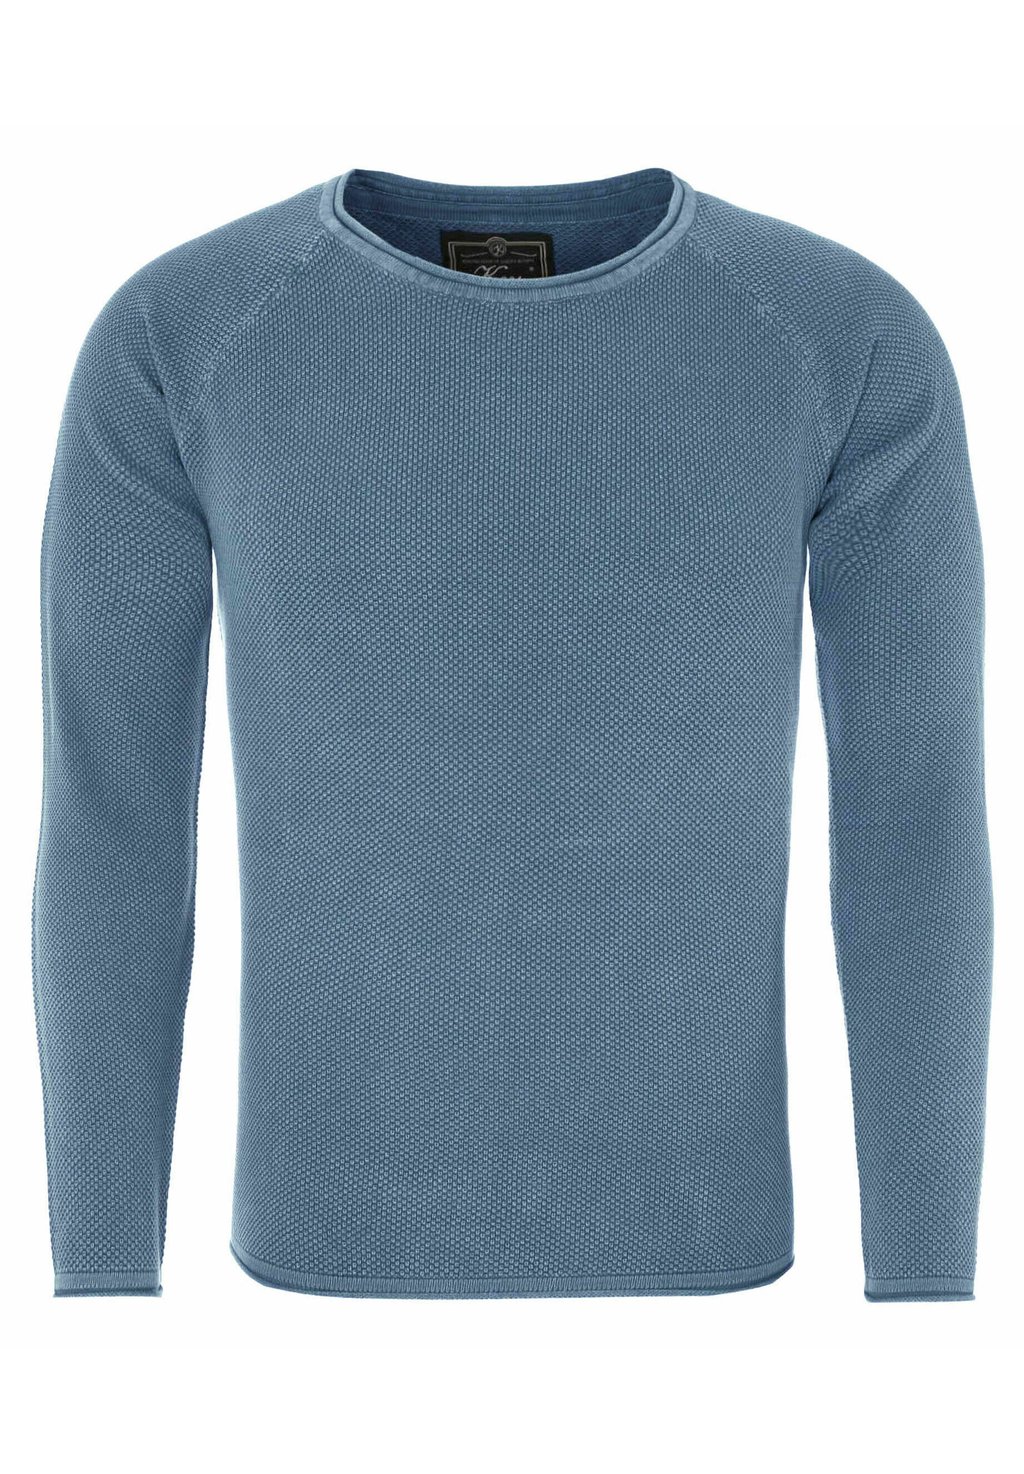 Вязаный свитер MST THOMAS ROUND NECK Key Largo, цвет blue (970)